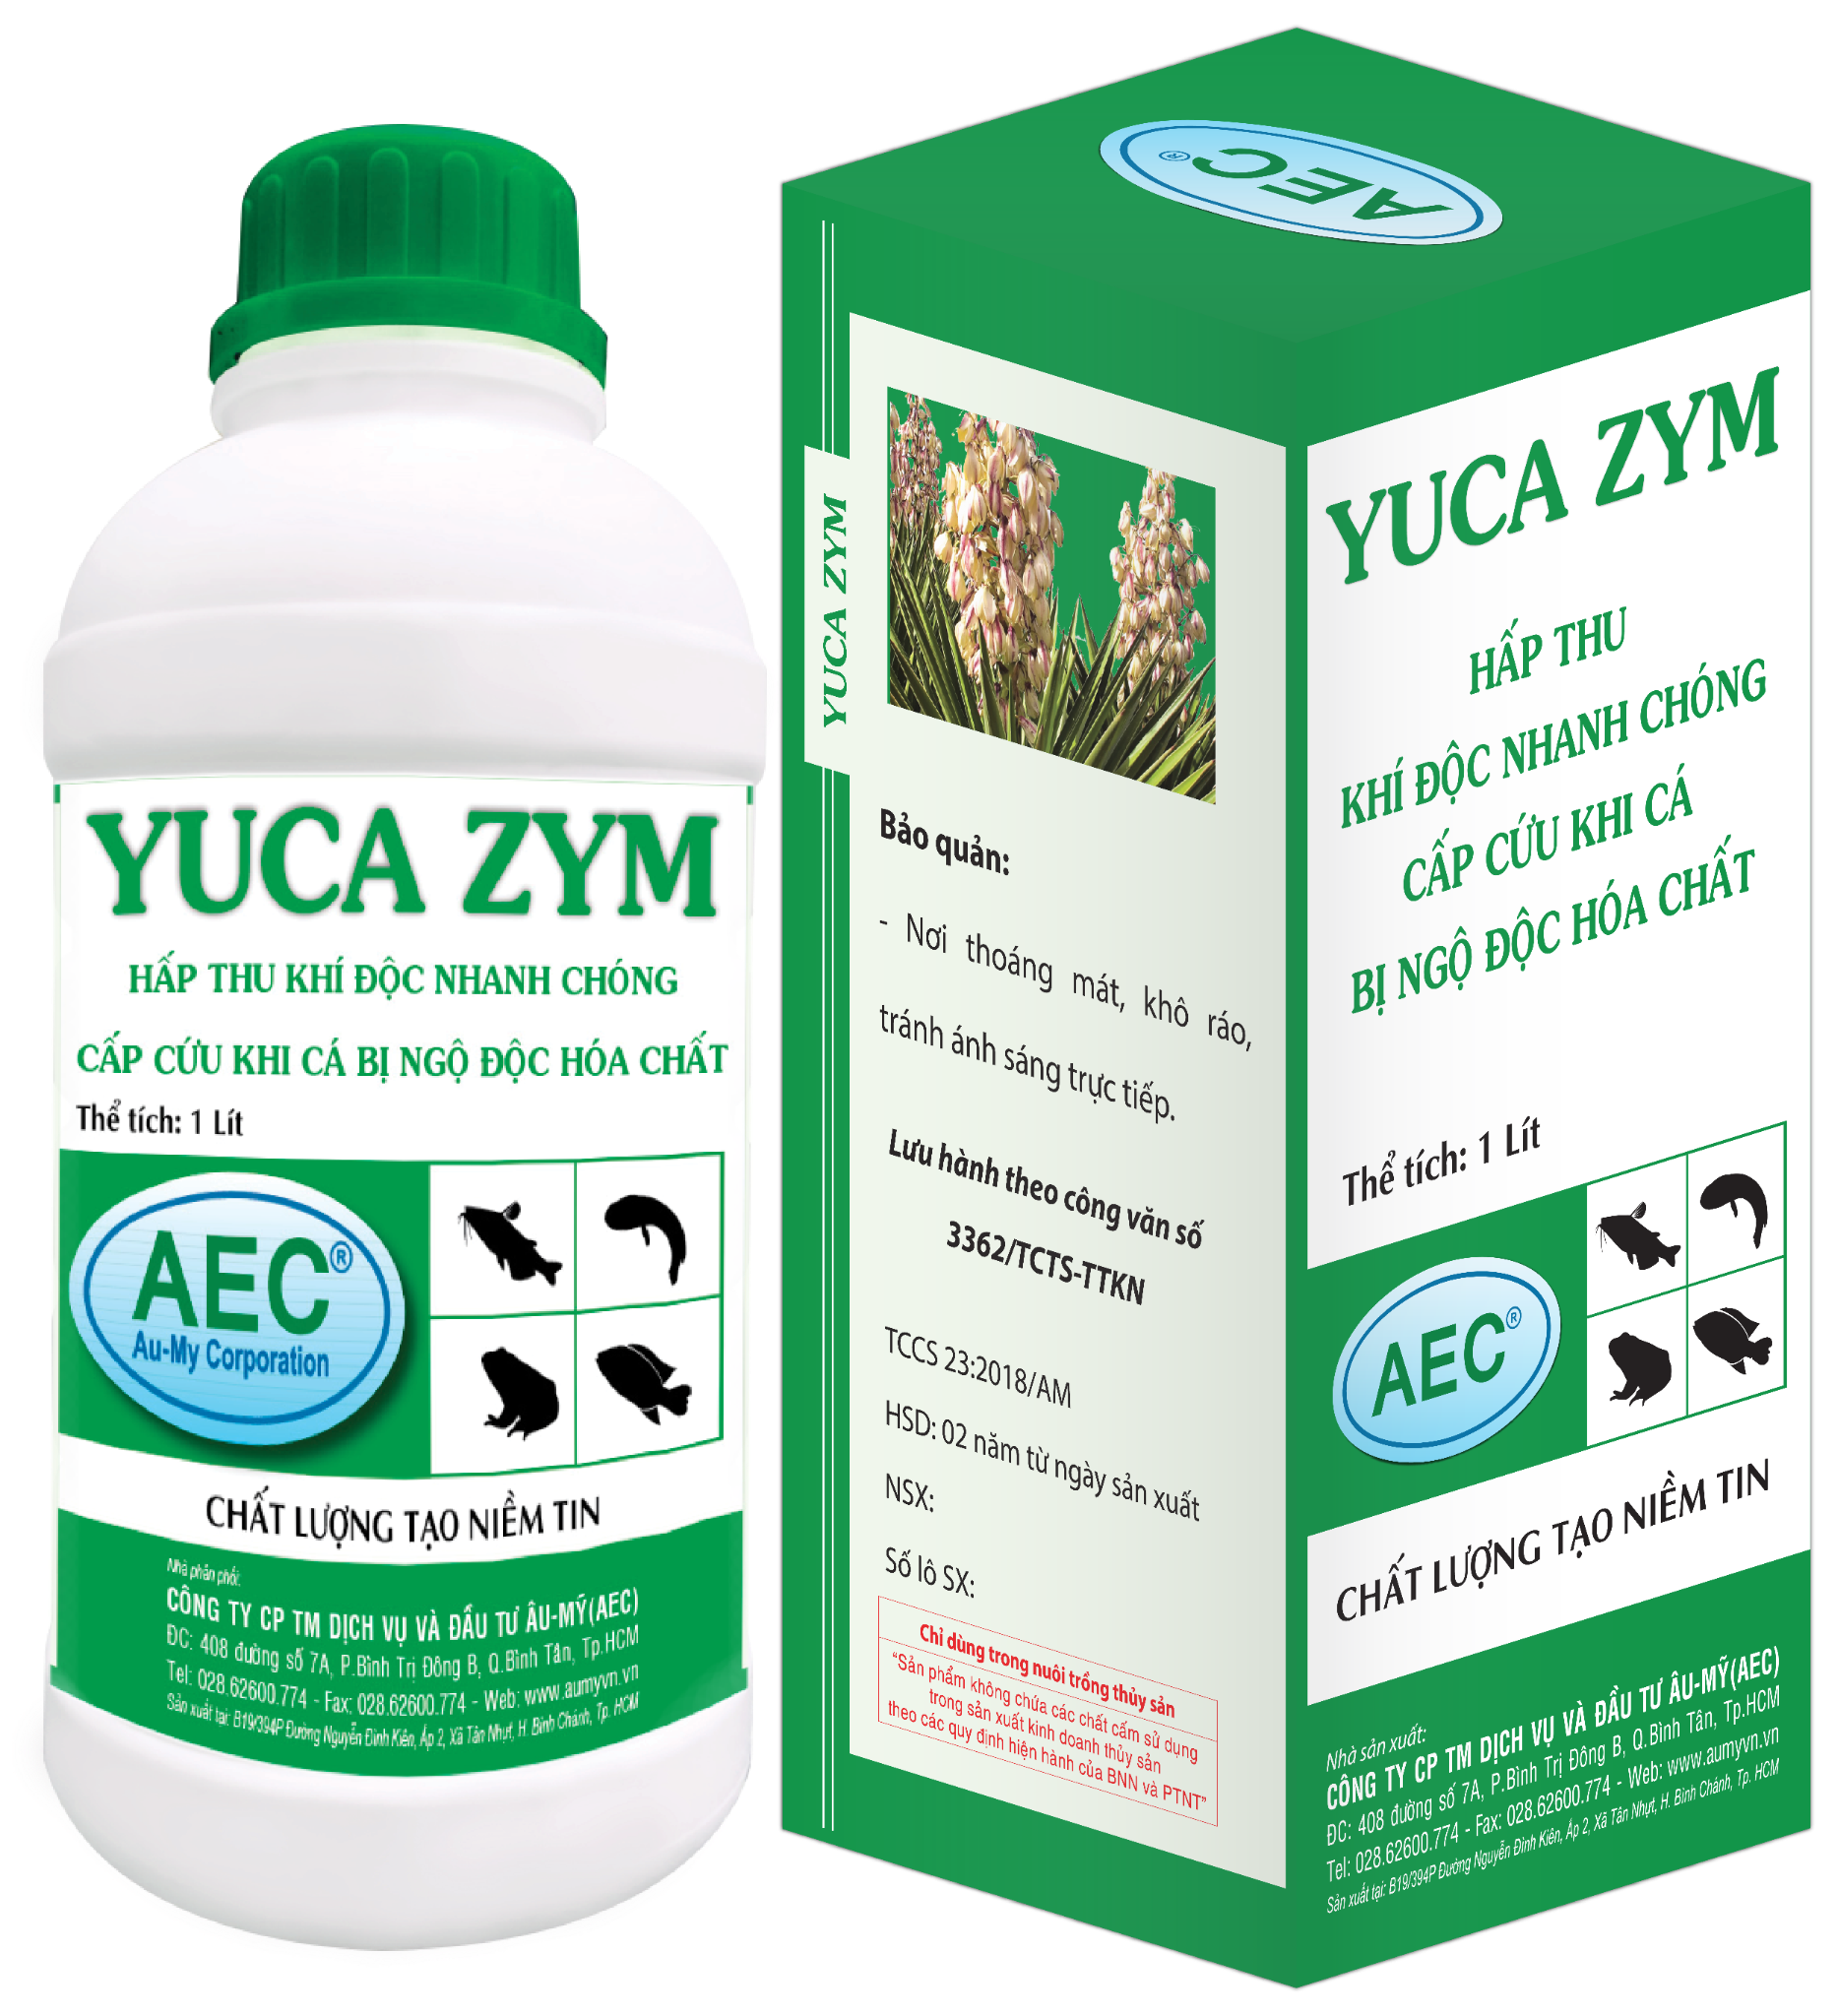  YUCA ZYM - Cung cấp Oxi cho Cá 